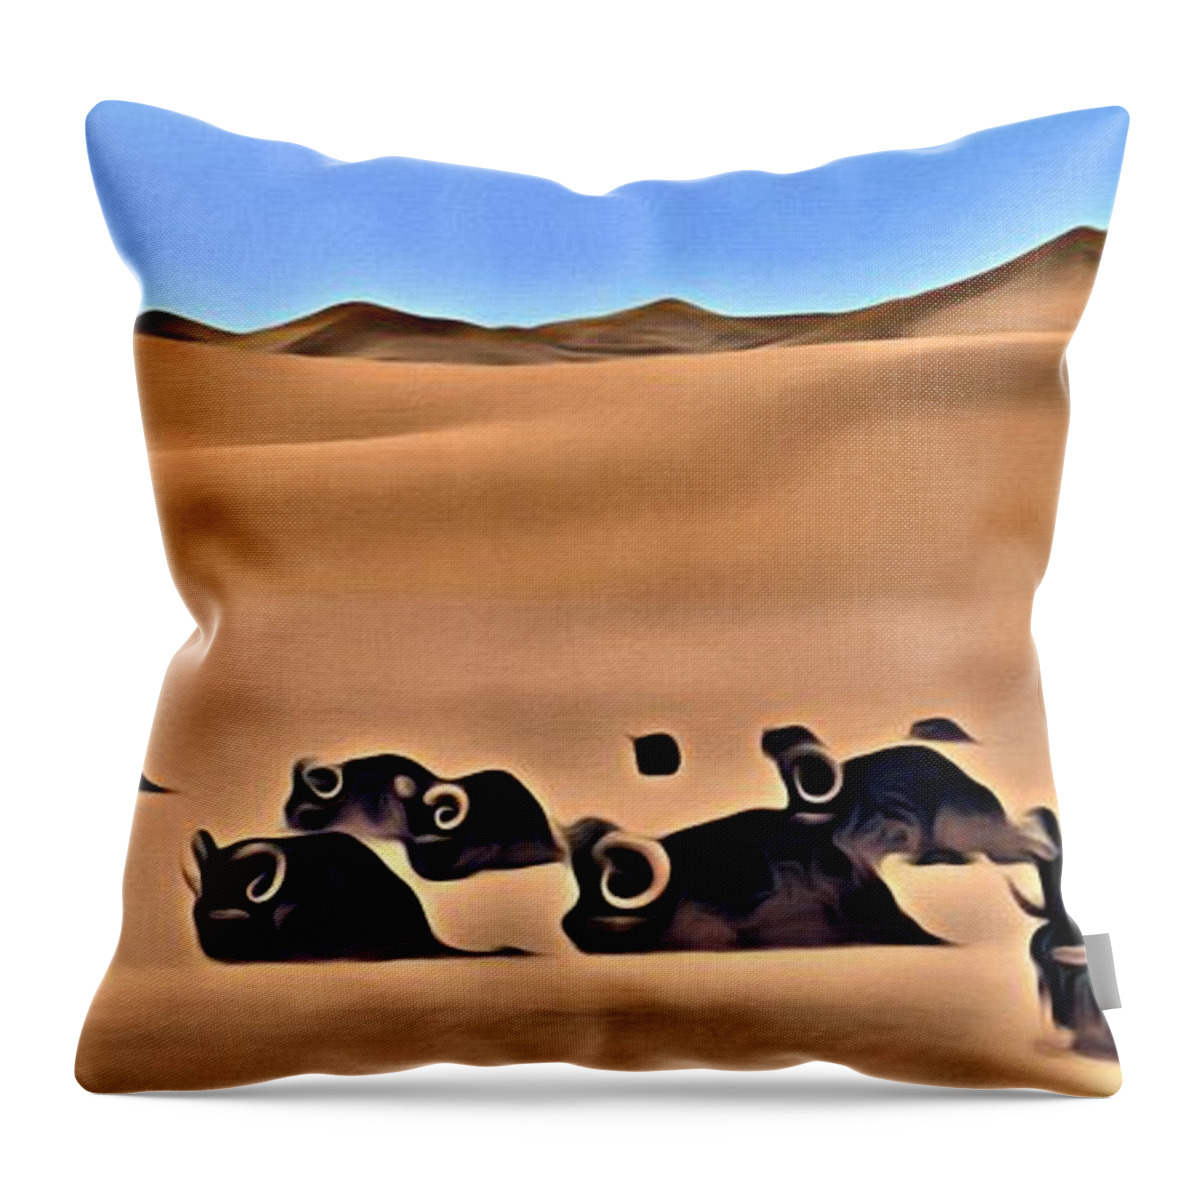 Star Wars Desert Animals Throw Pillow by Florian Rodarte - Florian Rodarte  - Artist Website